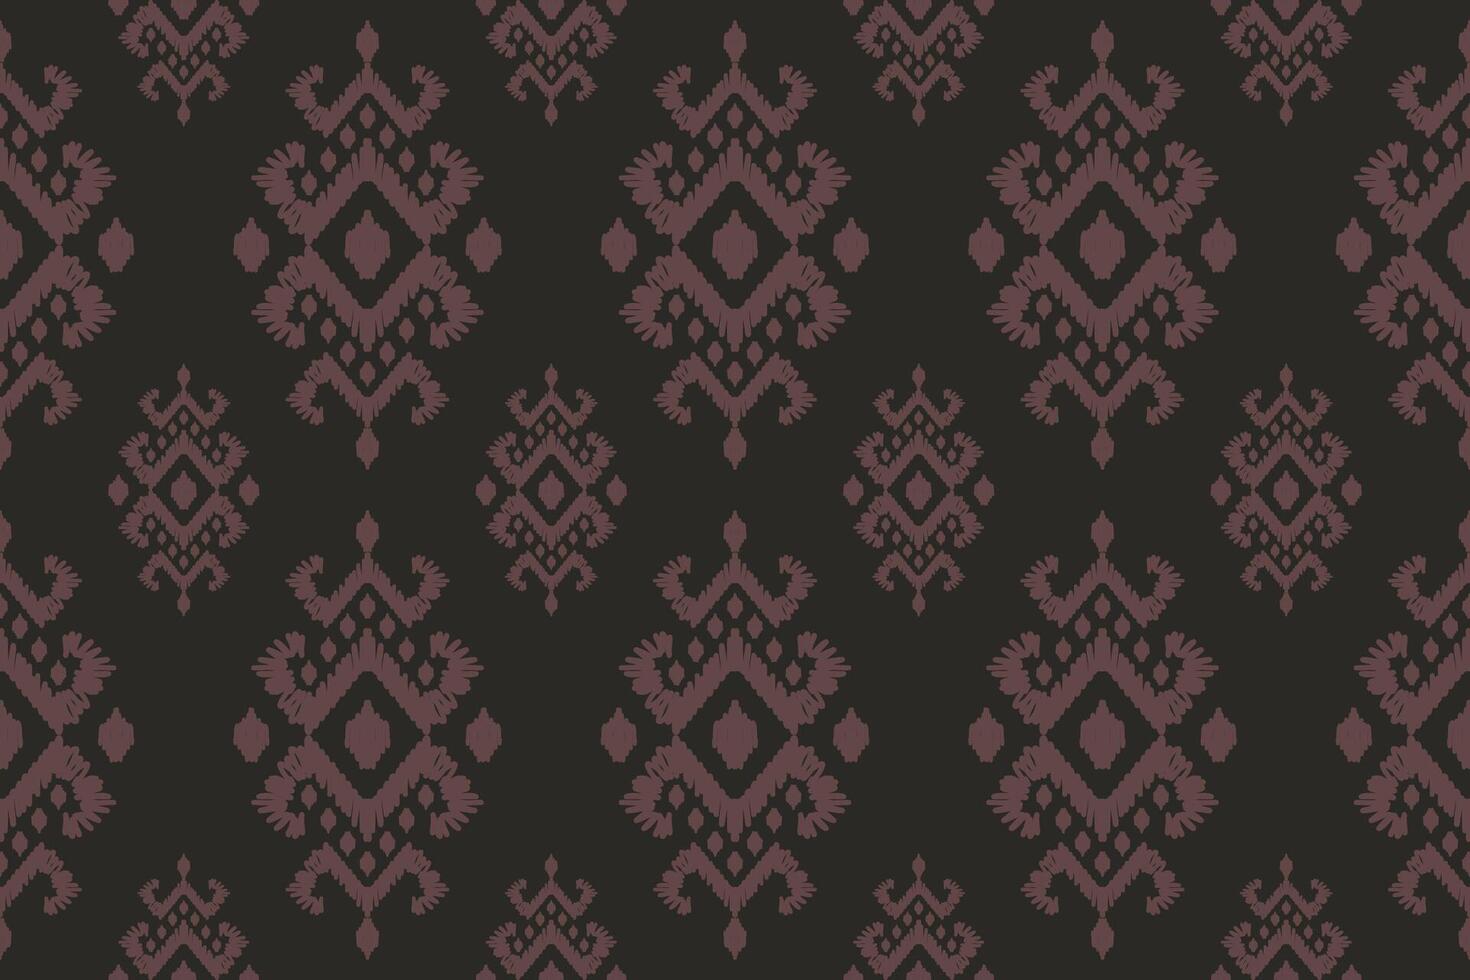 ikat tribal Indisch naadloos patroon. etnisch aztec kleding stof tapijt mandala ornament inheems boho chevron textiel.geometrisch Afrikaanse Amerikaans oosters traditioneel illustraties. borduurwerk stijl. vector